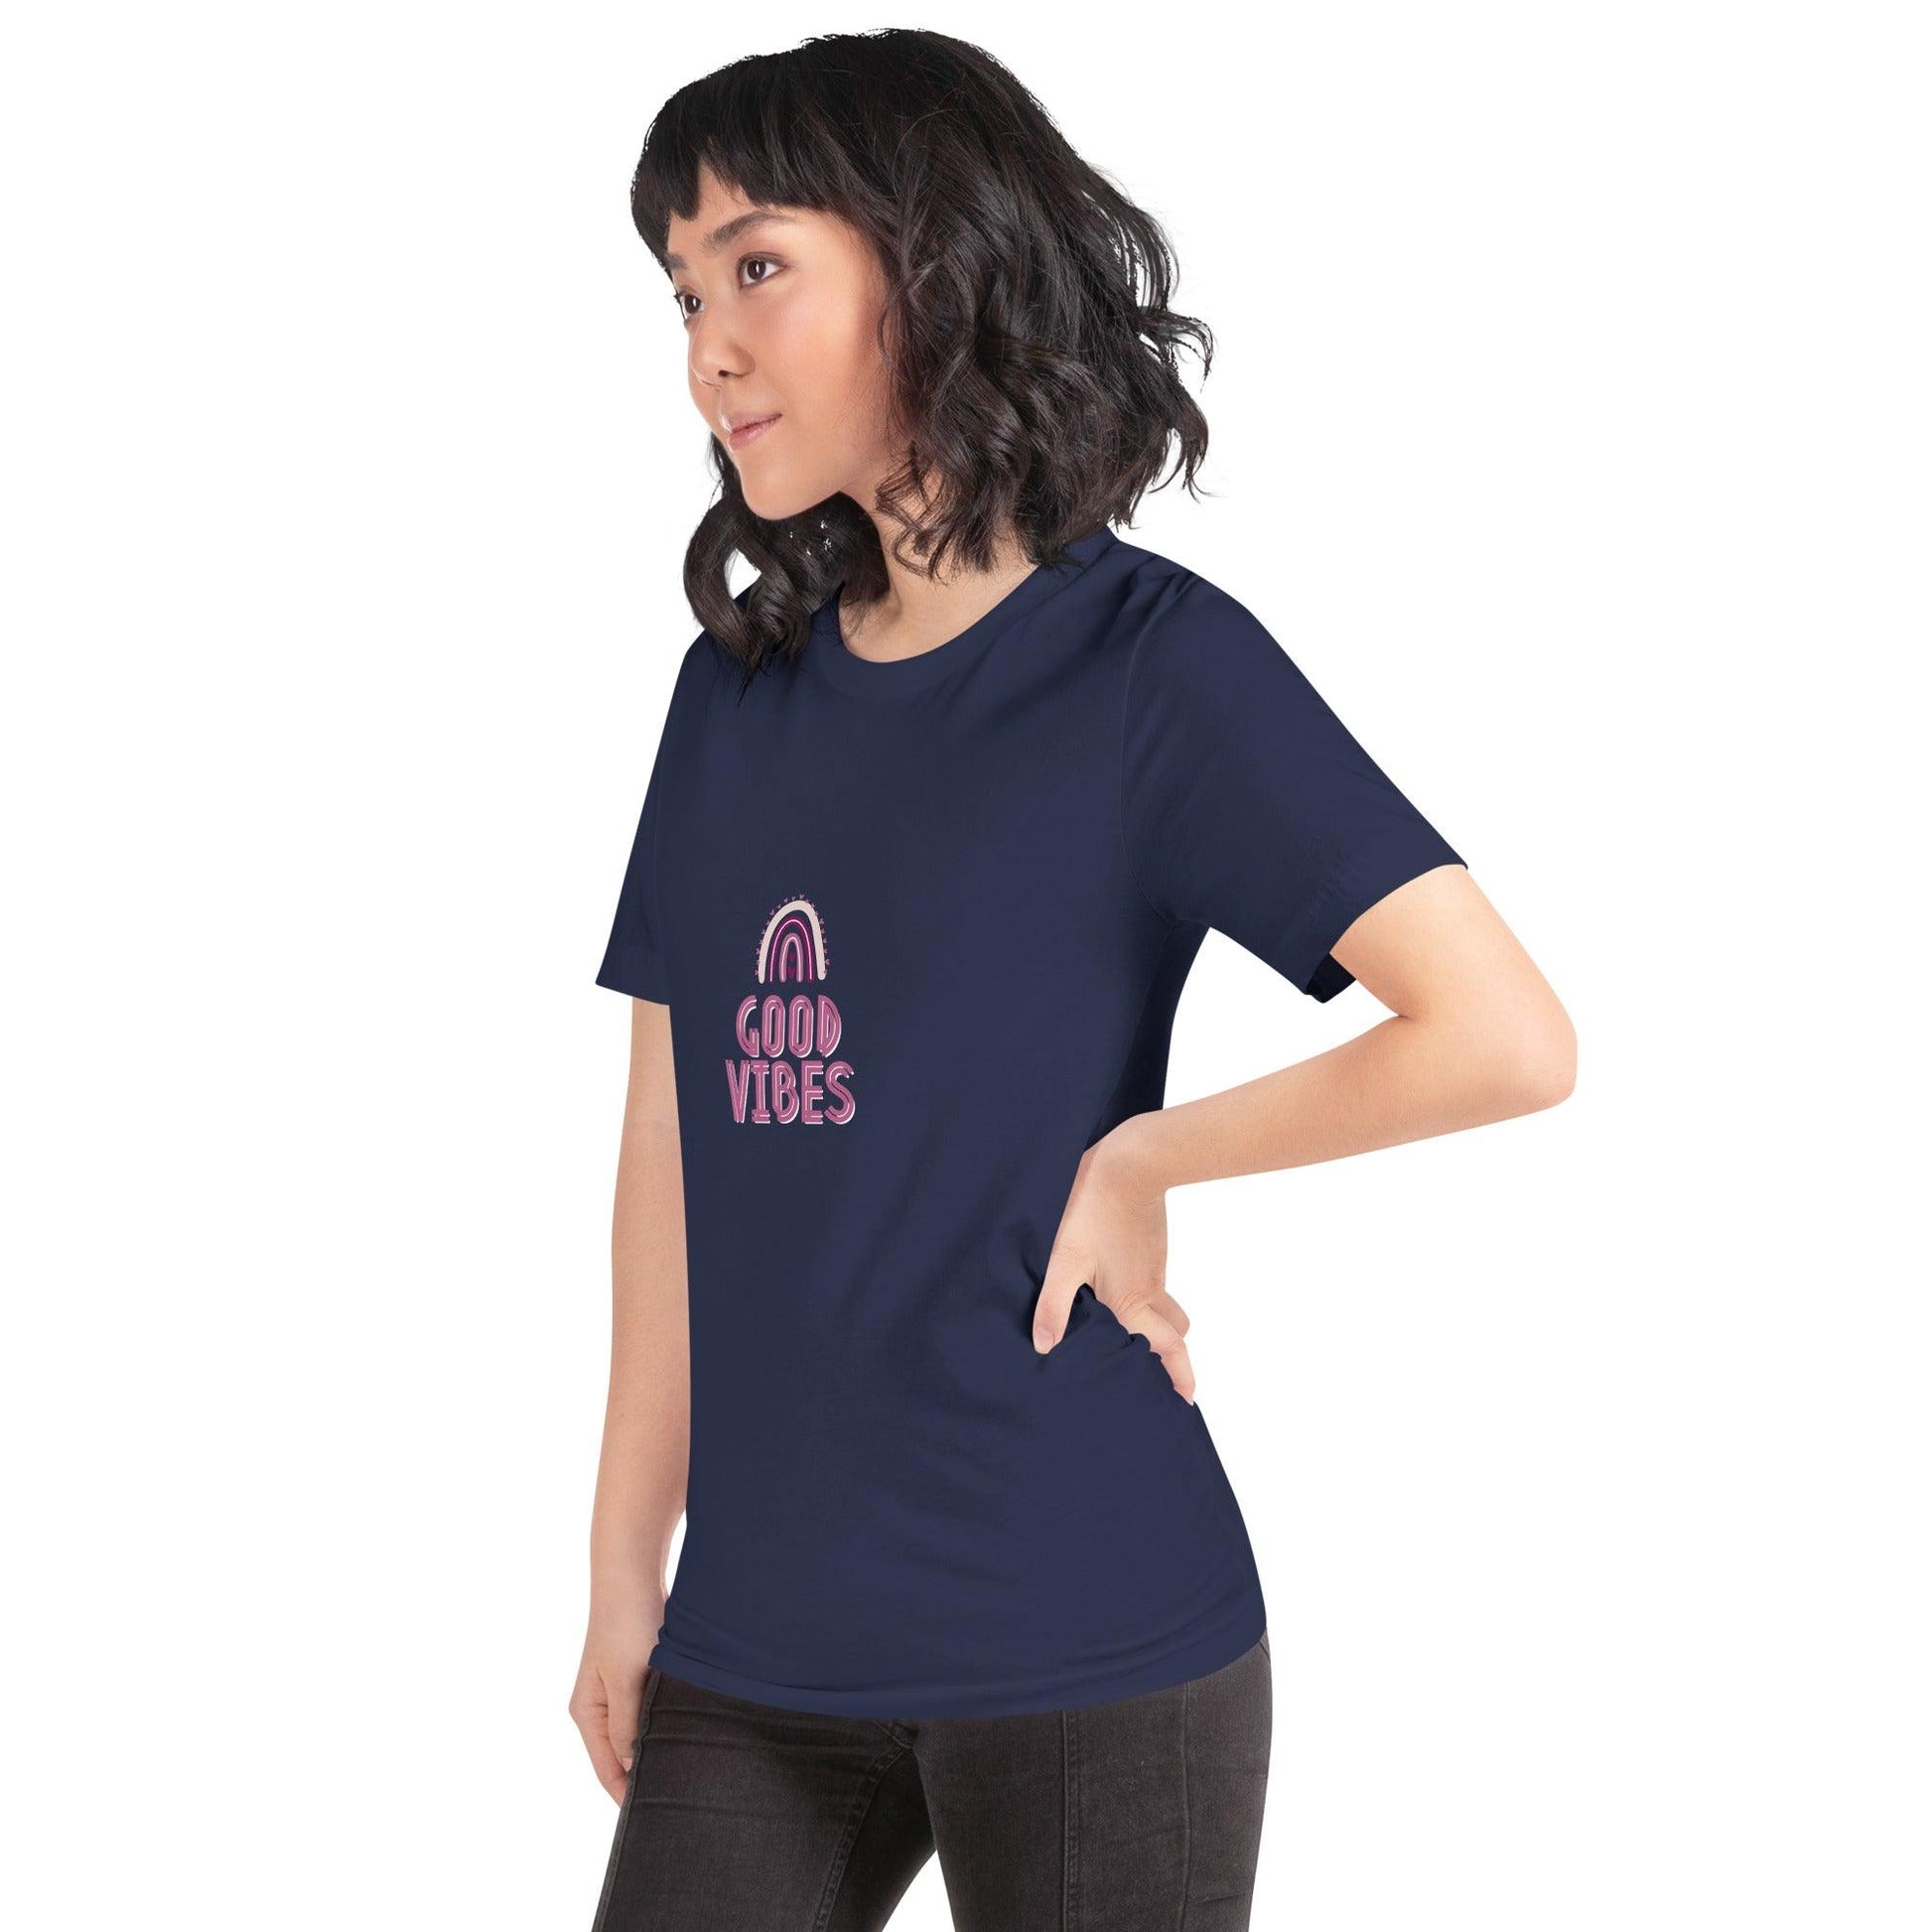 Good Vibes Premium Short-Sleeve Women's T-Shirt - Affirm Effect